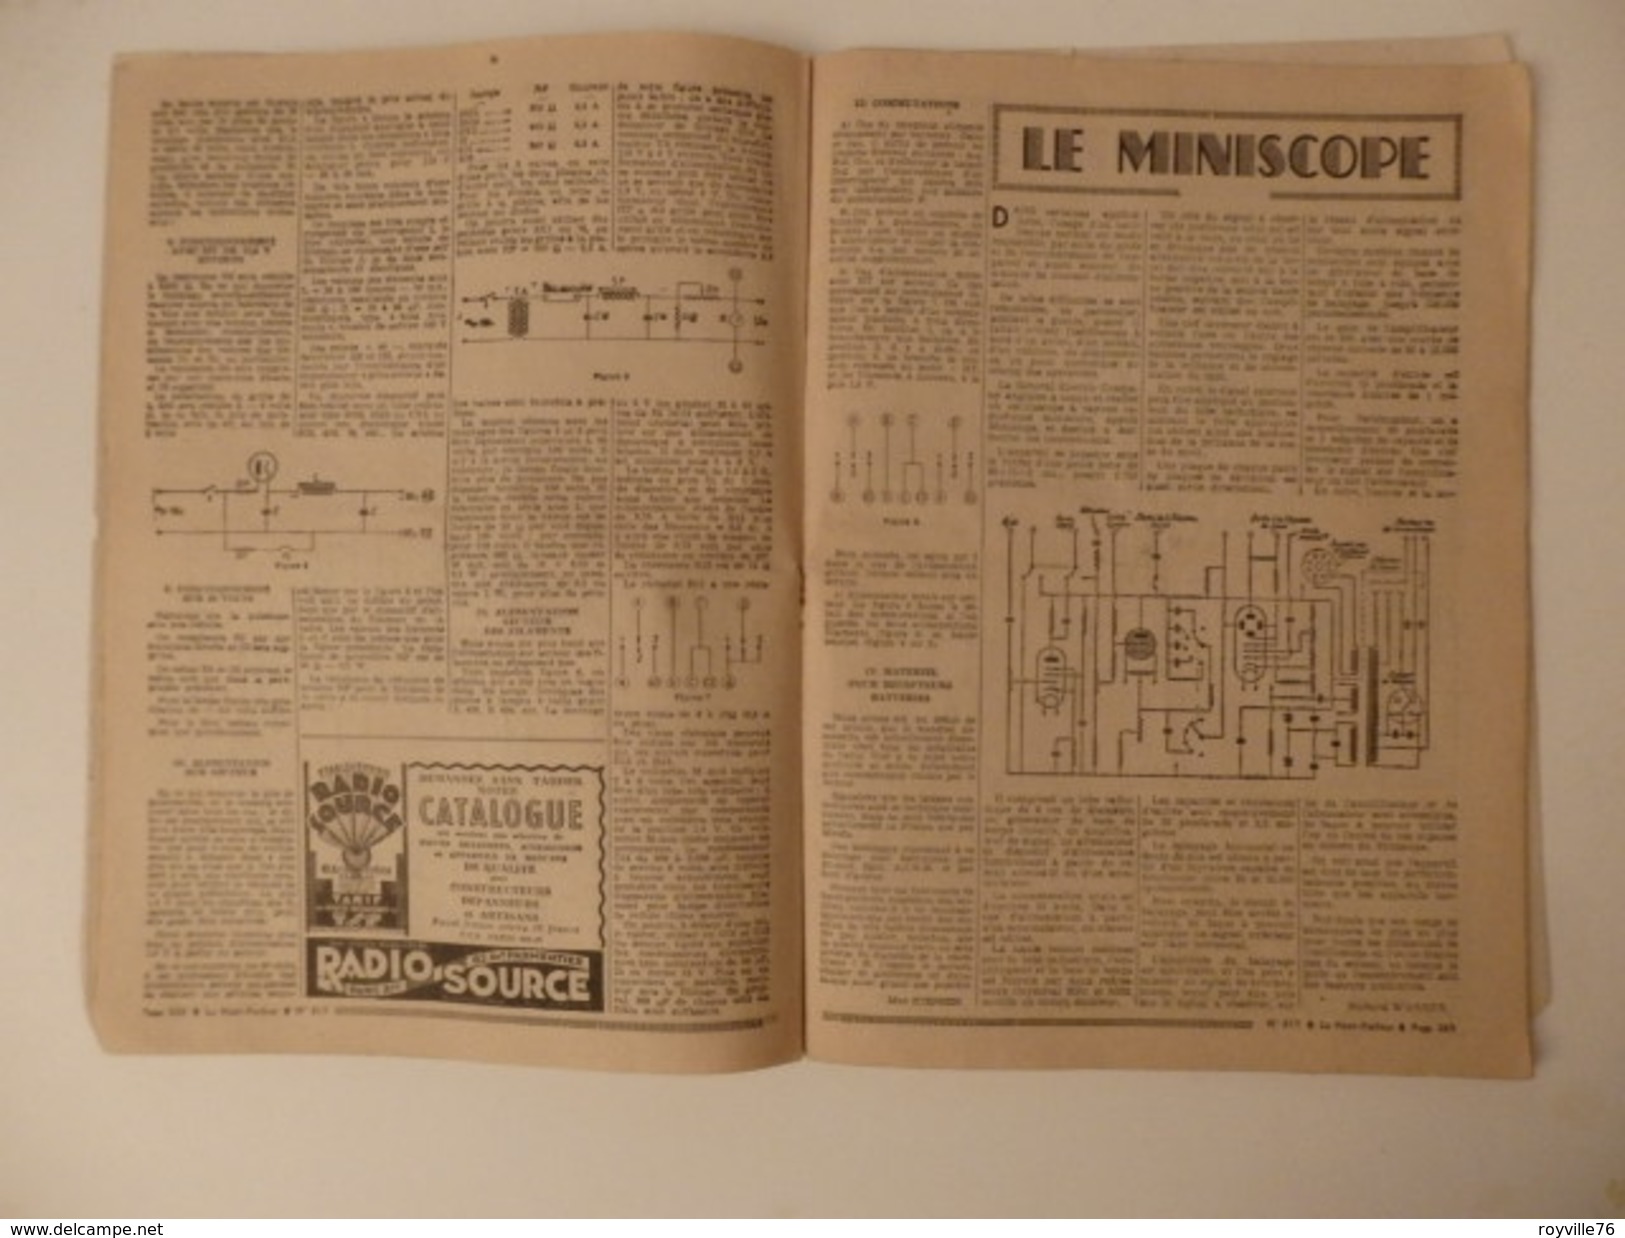 Journal sur "Le Haut-Parleur" du 20 mai 1948.